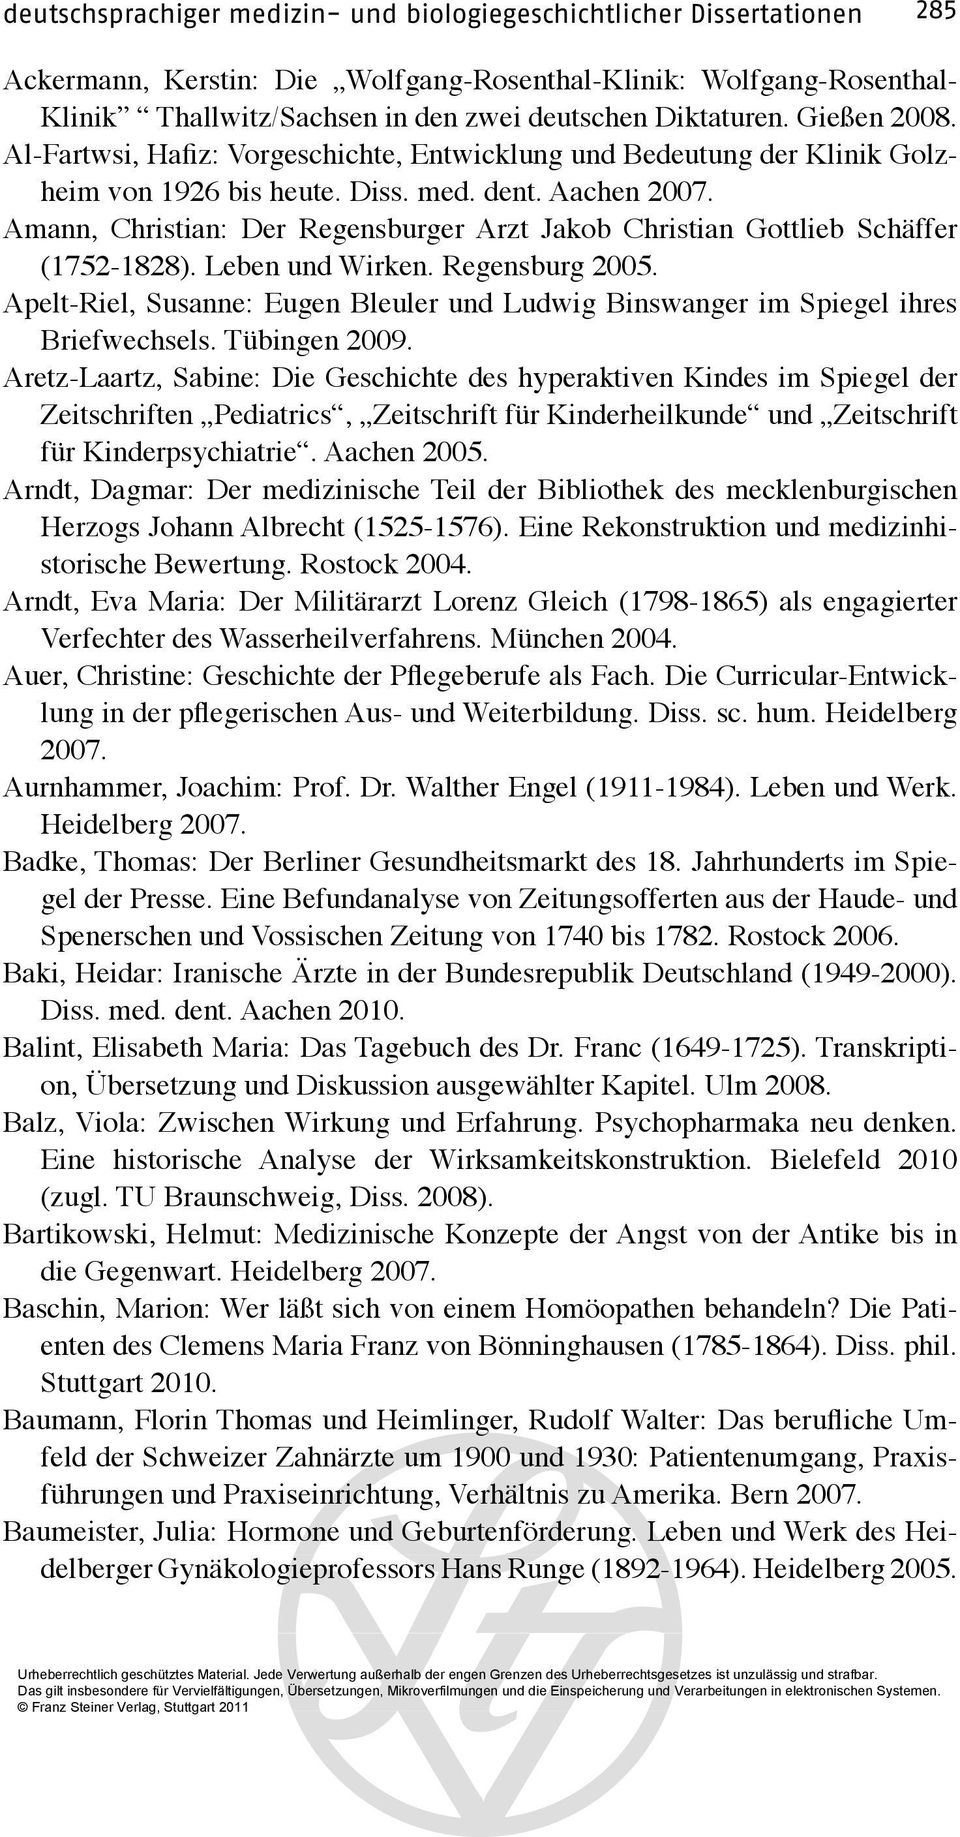 Amann, Christian: Der Regensburger Arzt Jakob Christian Gottlieb Schäffer (1752-1828). Leben und Wirken. Regensburg 2005.